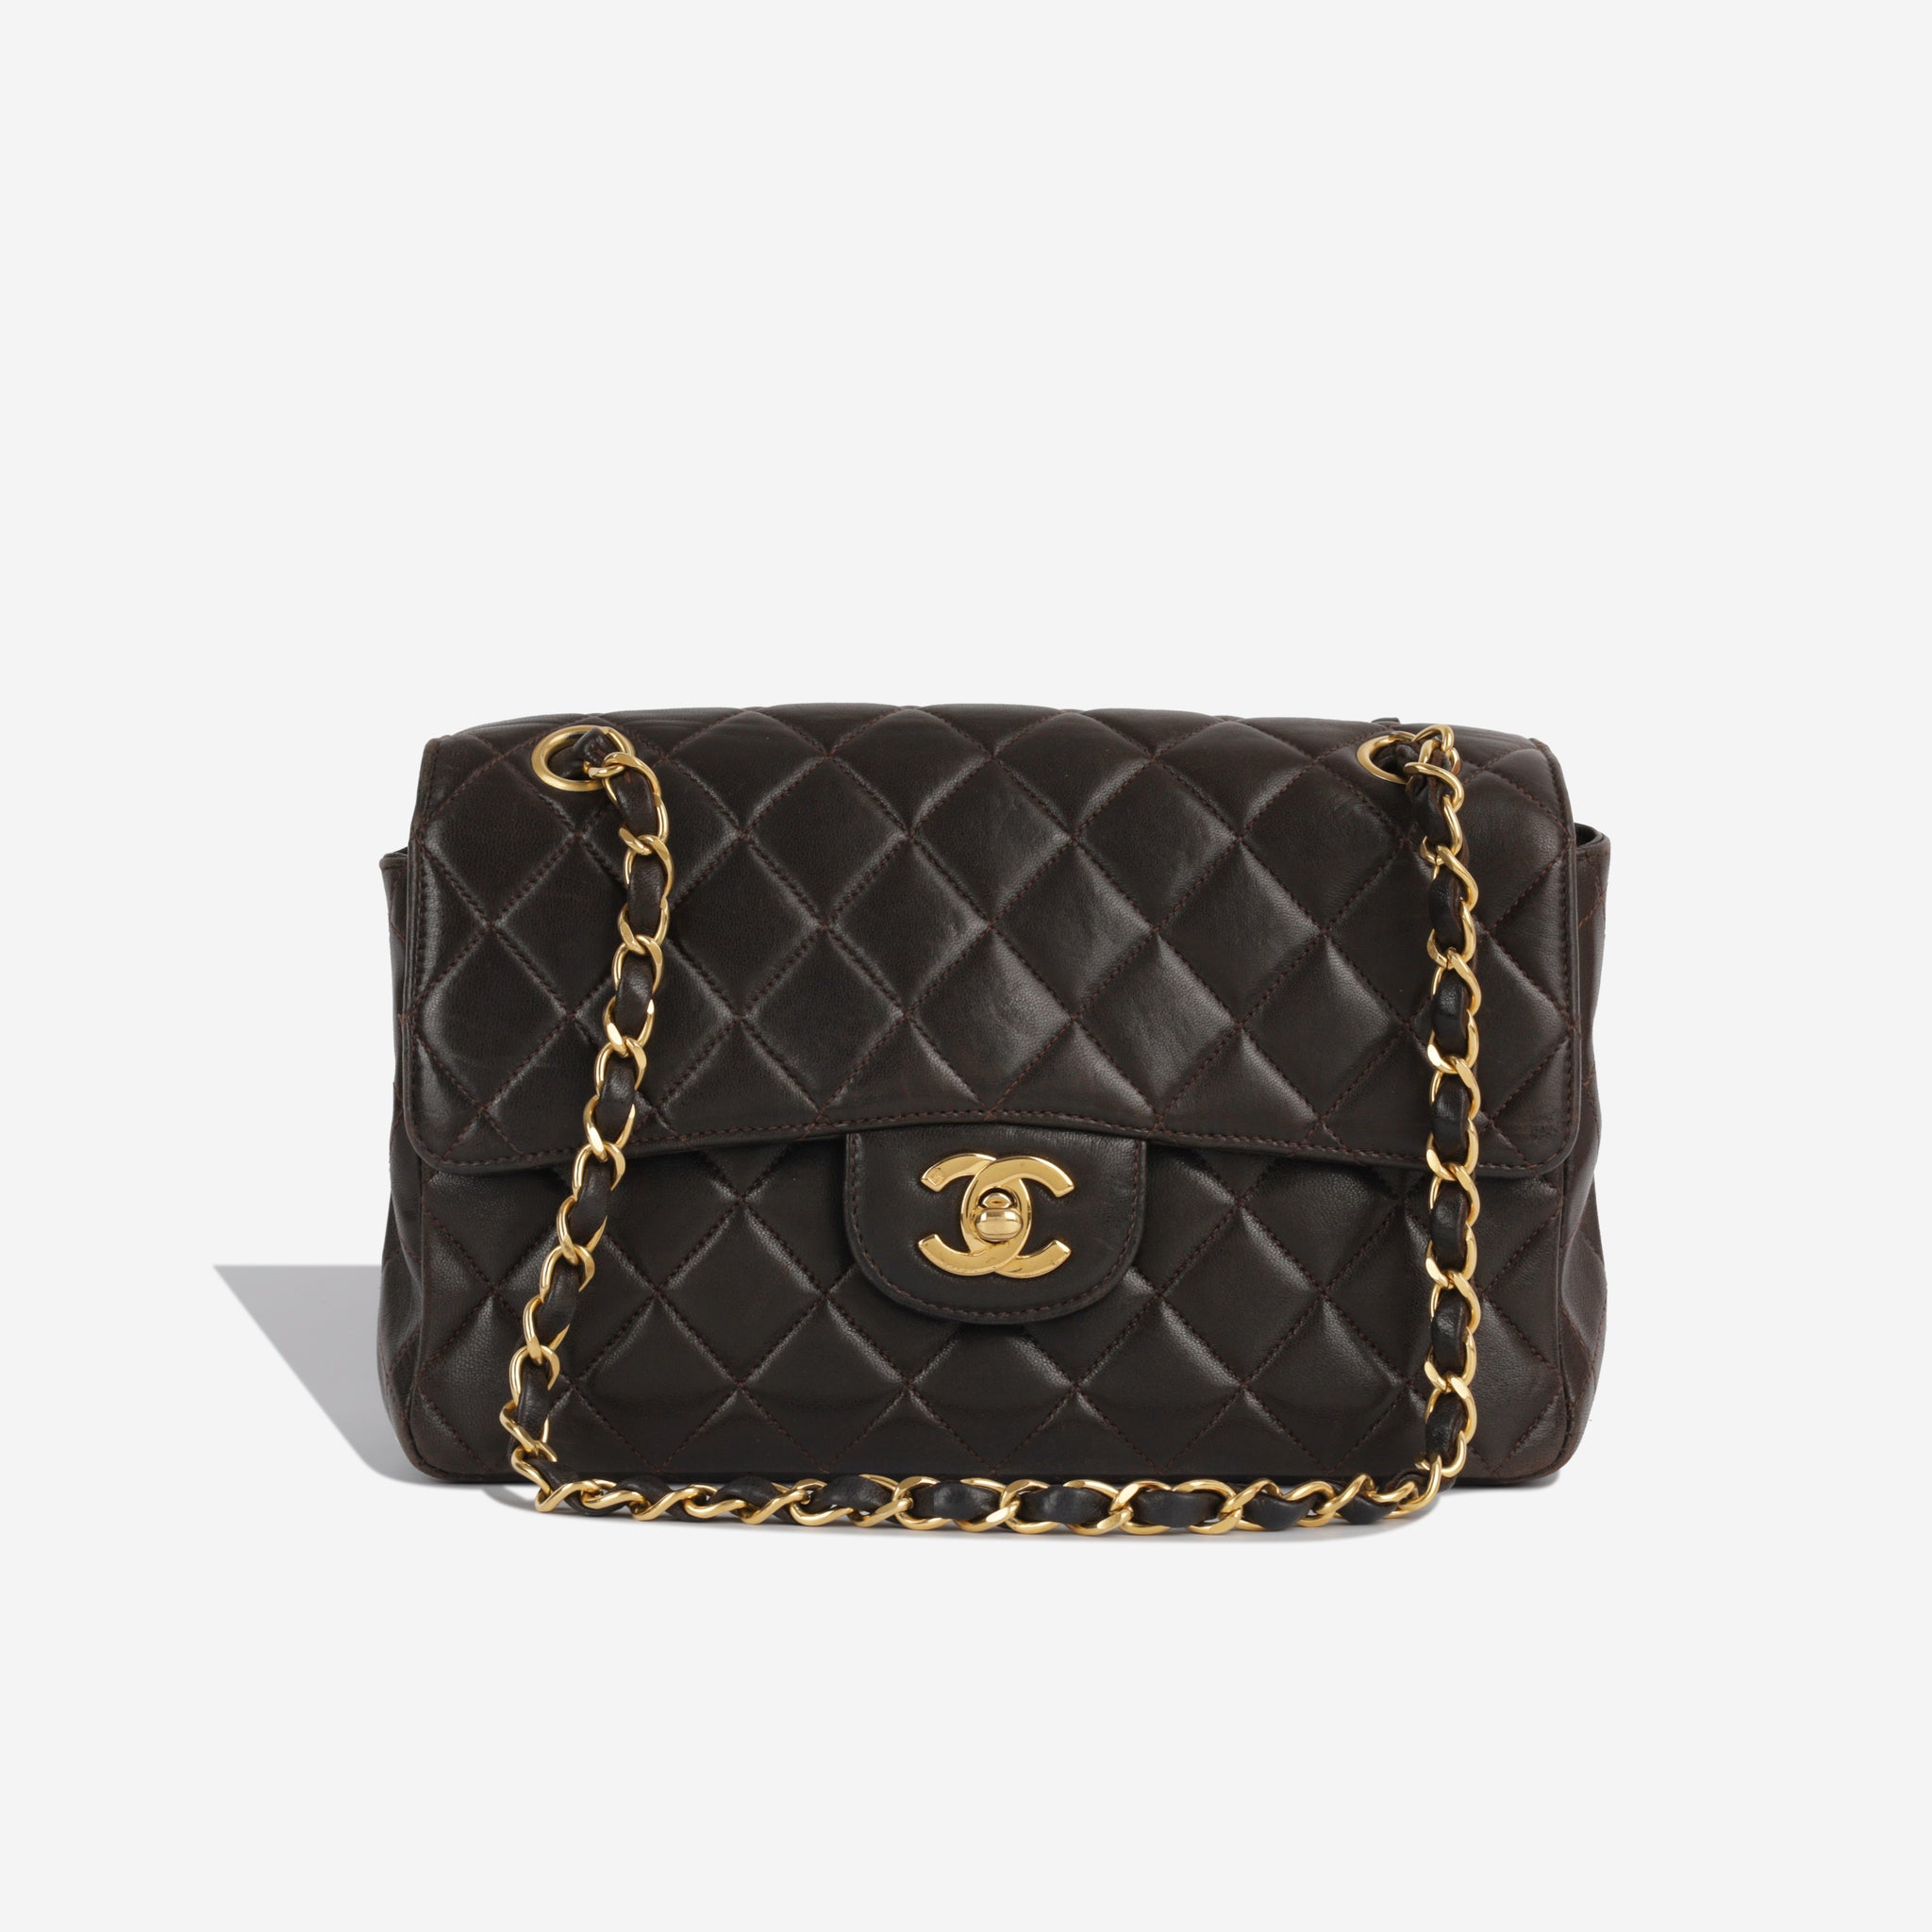 Chanel Vintage Classic Double Flap